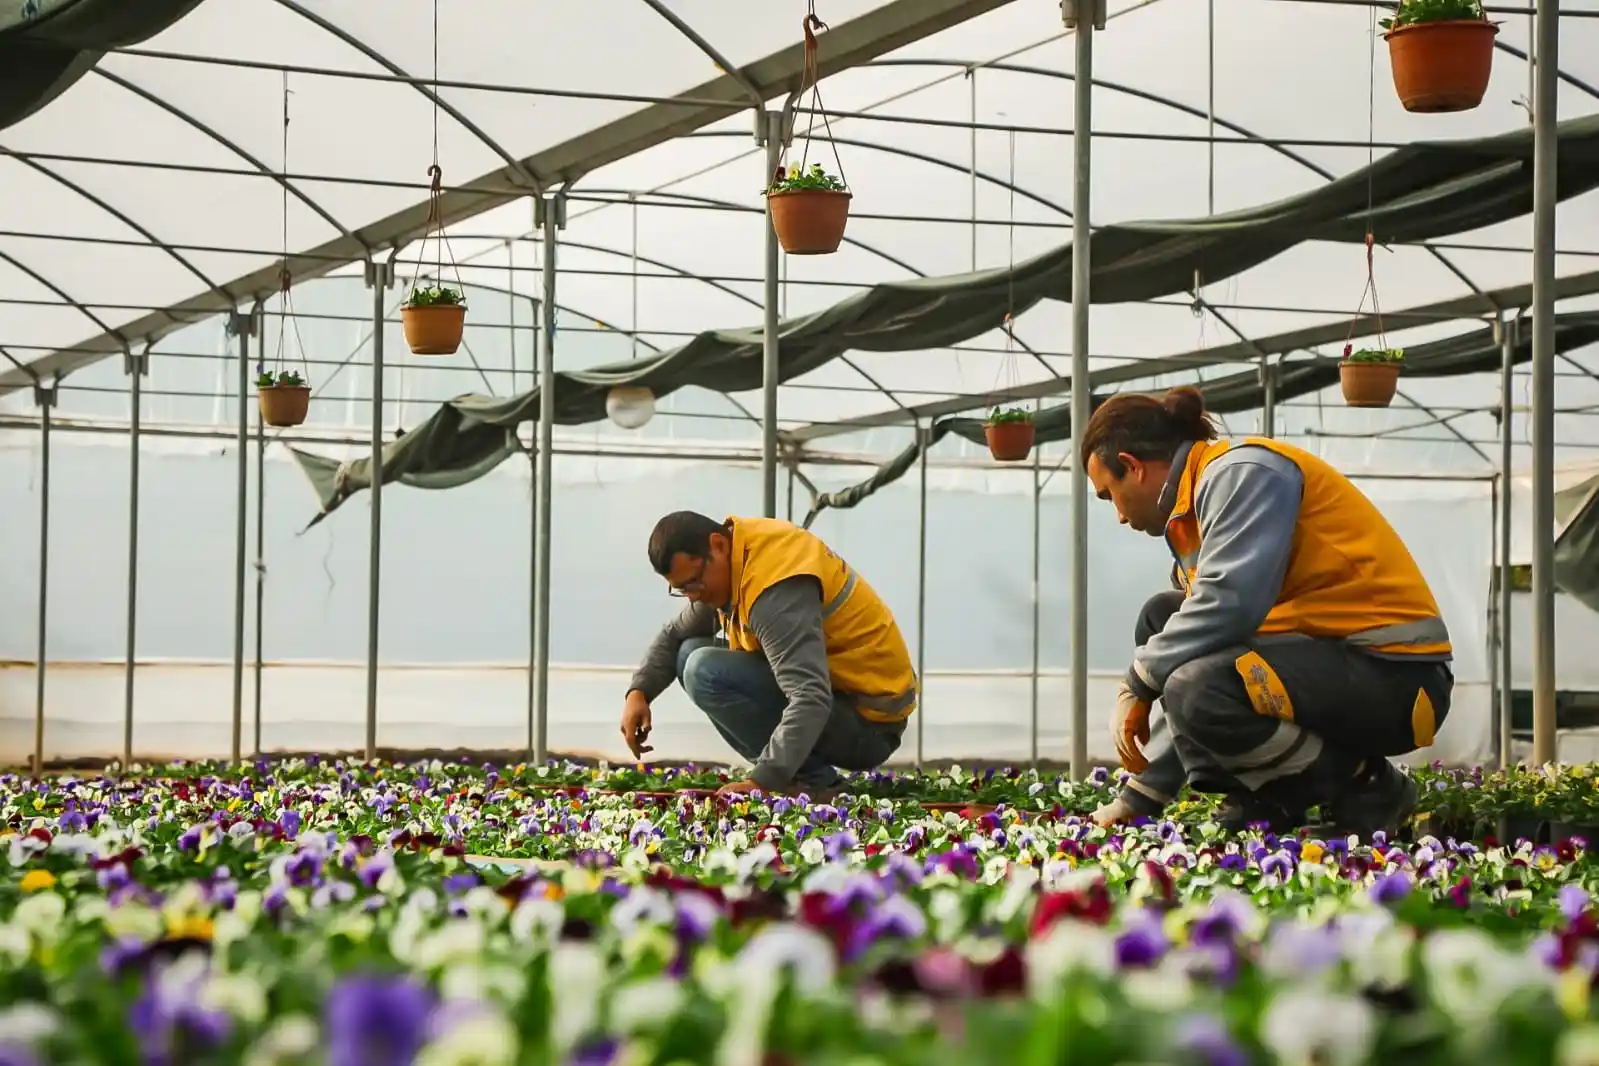 Büyükşehir Belediyesi Aydın’ı renklendiren çiçekleri kendi üretiyor
